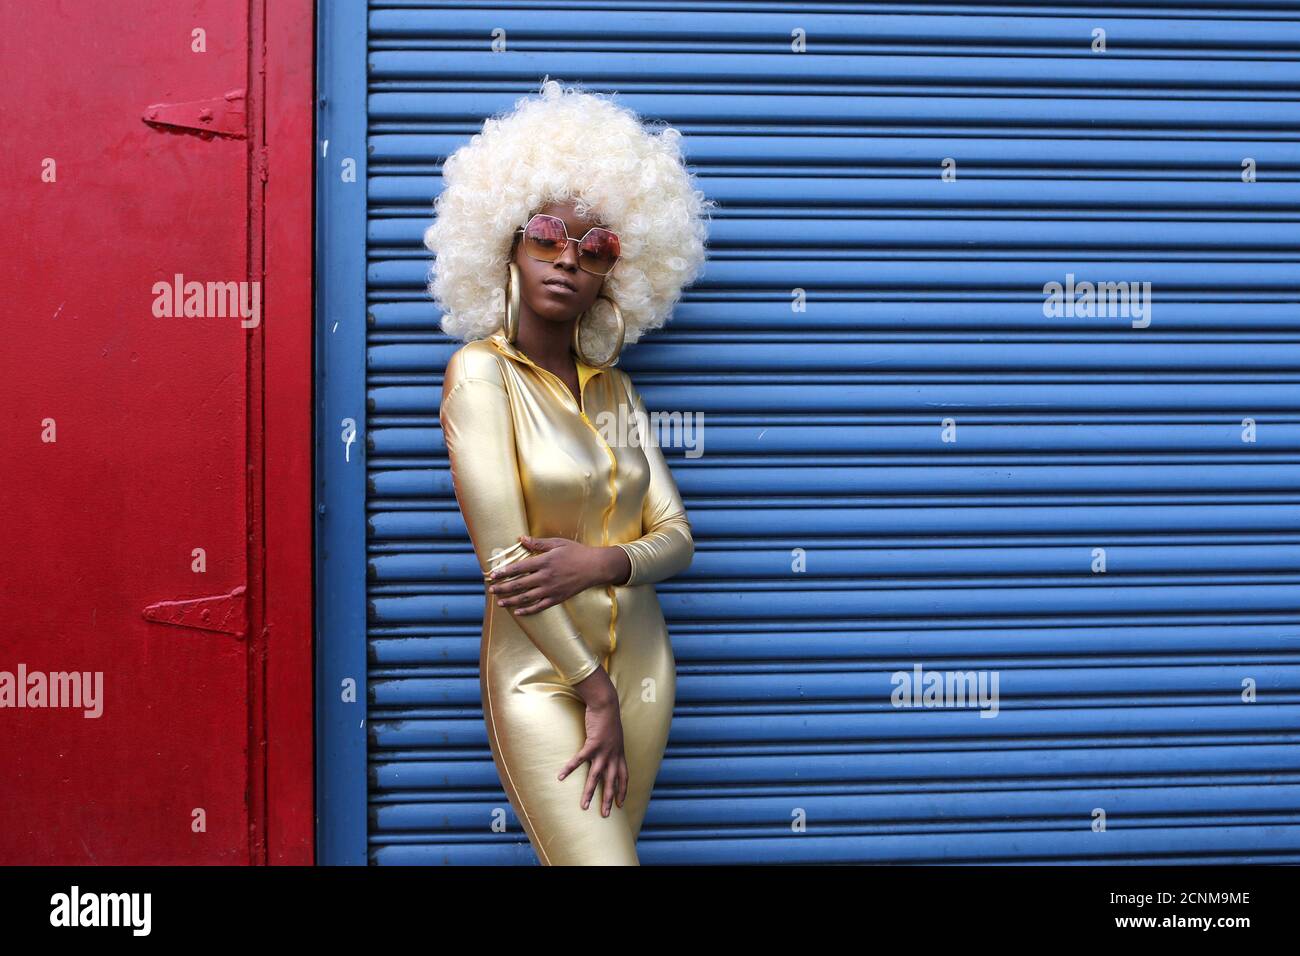 Modelo y blogger Fennella como Whoa posan para una foto durante la Semana de la Moda de Nueva York en el barrio de Manhattan de la Ciudad de Nueva York, EE.UU., 9 de septiembre de 2017. REUTERS/Joe Penney Foto de stock